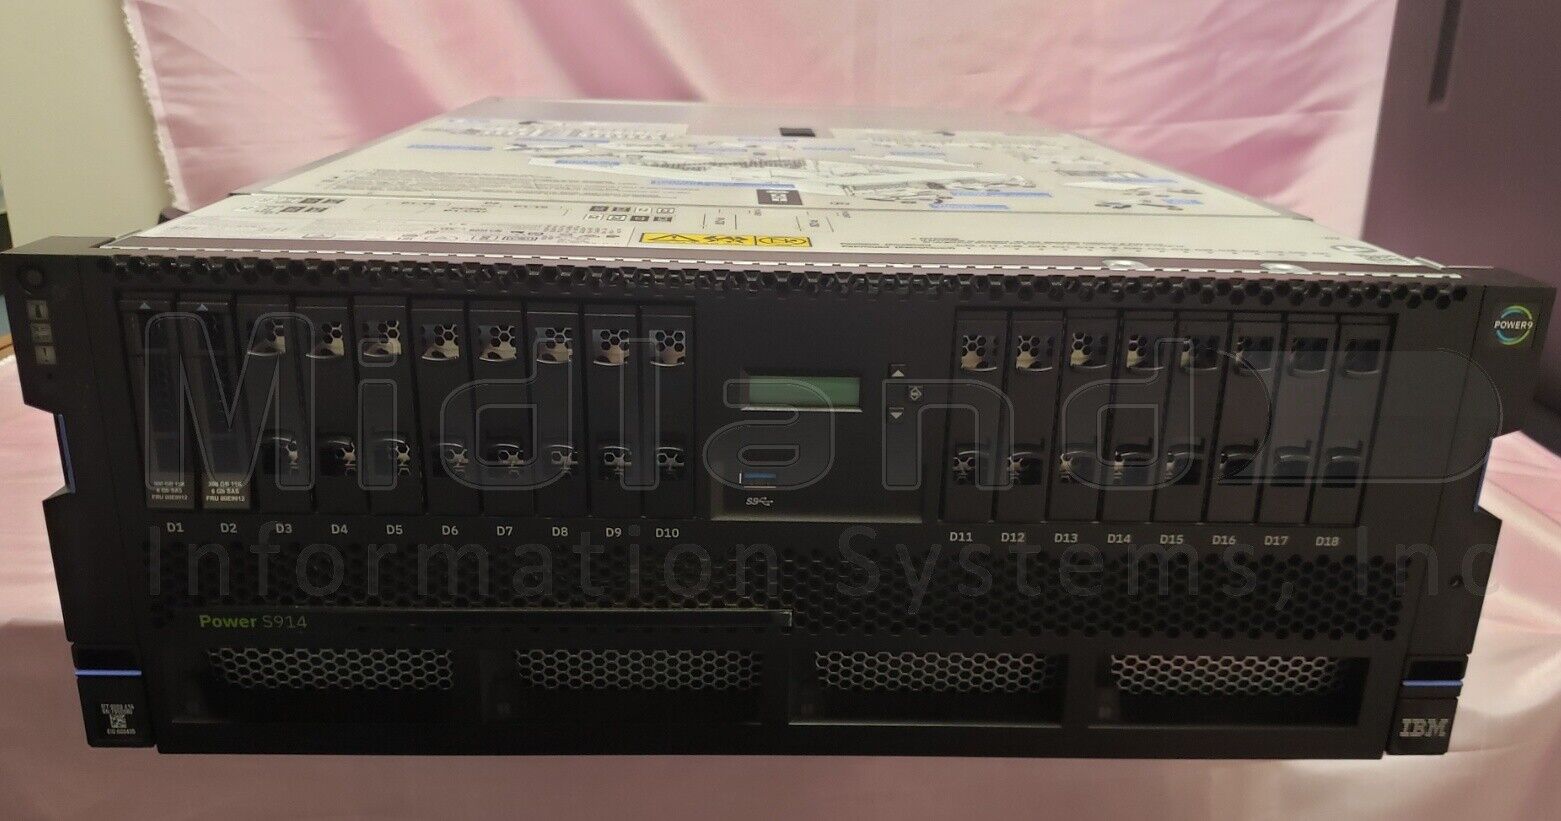 IBM 9009-41A Power S914 i series, 4-core 2.3/3.8Ghz 1 OS 5 user i V7R3 license